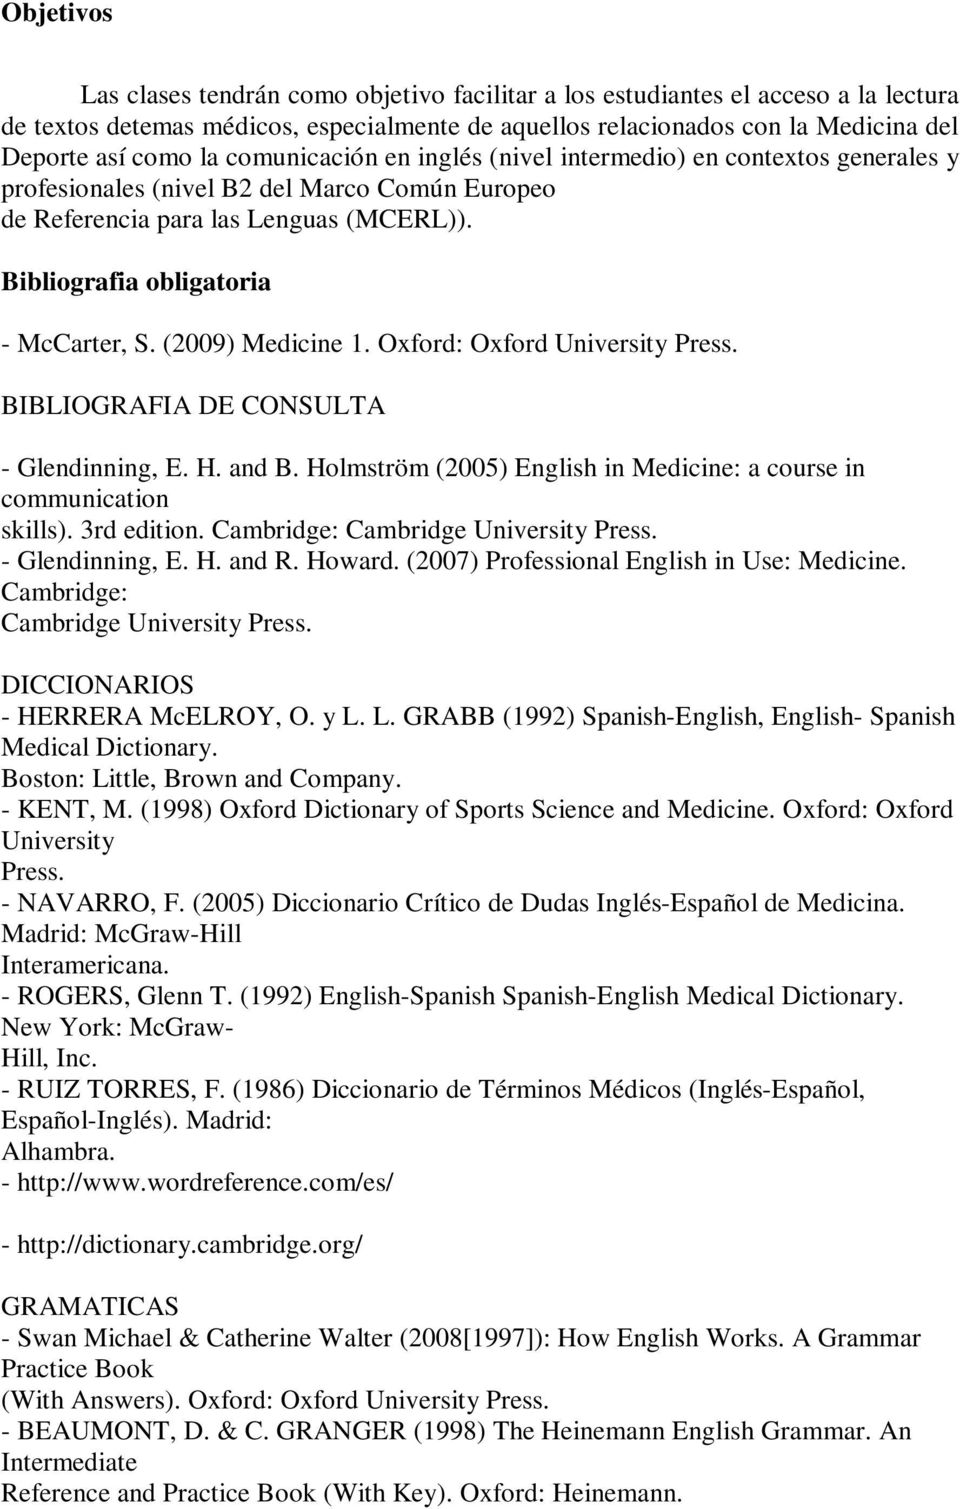 (2009) Medicine 1. Oxford: Oxford University Press. BIBLIOGRAFIA DE CONSULTA - Glendinning, E. H. and B. Holmström (2005) English in Medicine: a course in communication skills). 3rd edition.